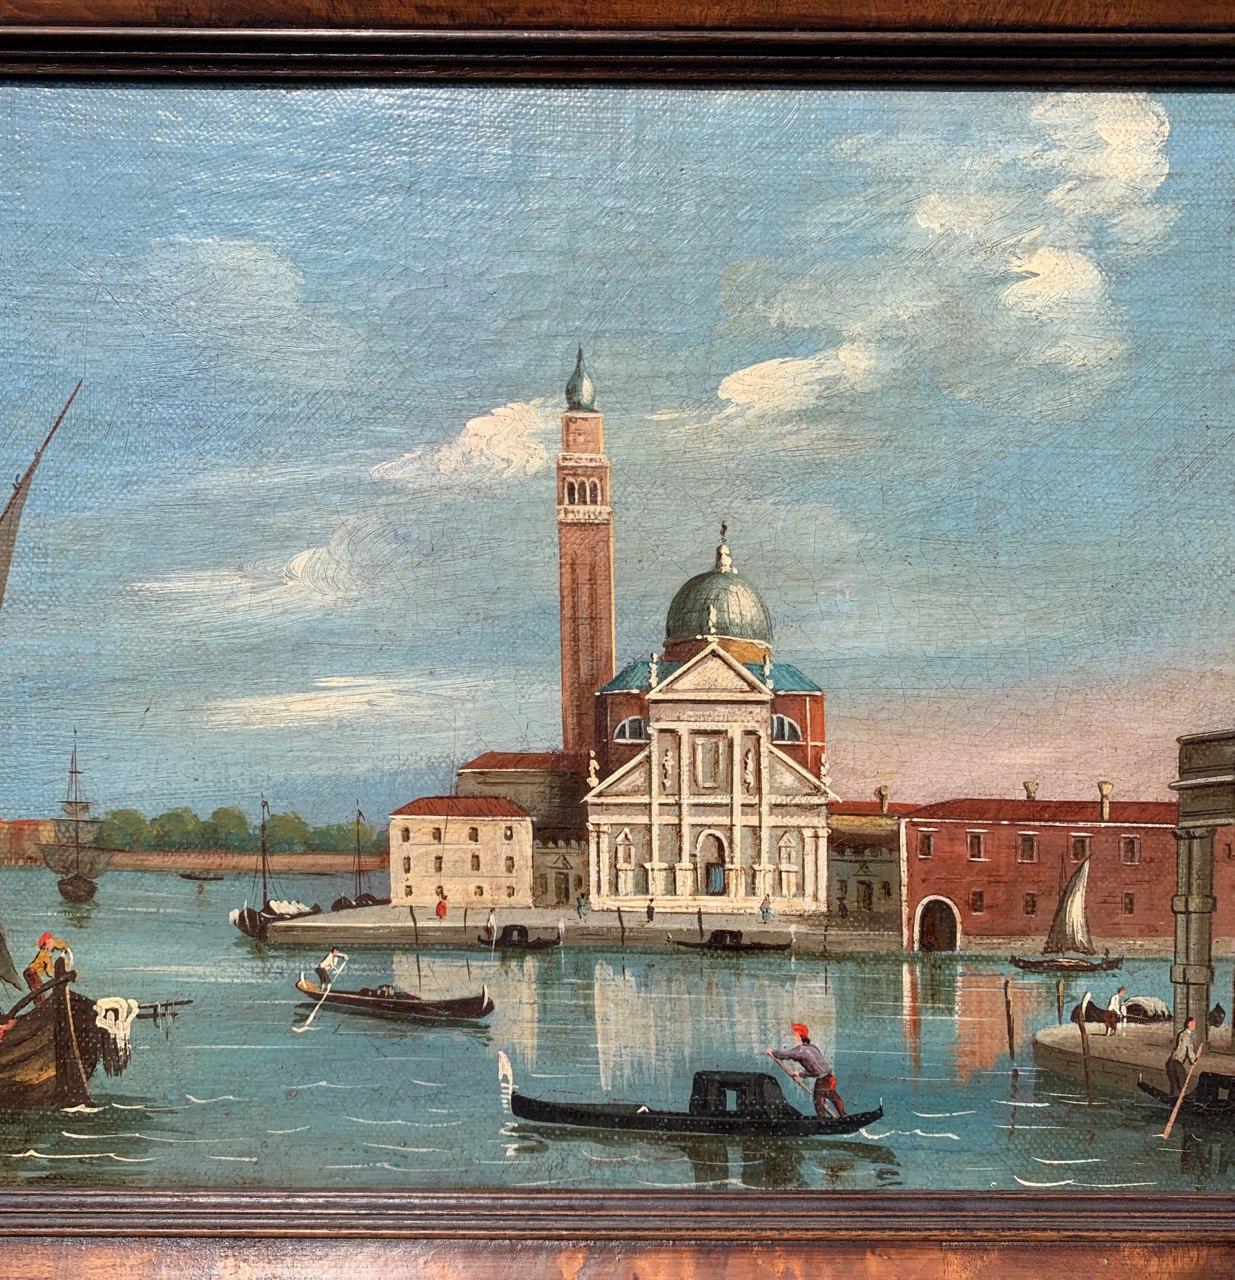 Anhänger von Antonio Canal, bekannt als Canaletto (19. Jahrhundert) - Venedig, Blick auf die Insel S. Giorgio von der Punta della Dogana.

30 x 40 cm ohne Rahmen, 41,5 x 51,5 cm mit Rahmen.

Öl auf Leinwand, in einem Holzrahmen.

Zustandsbericht: